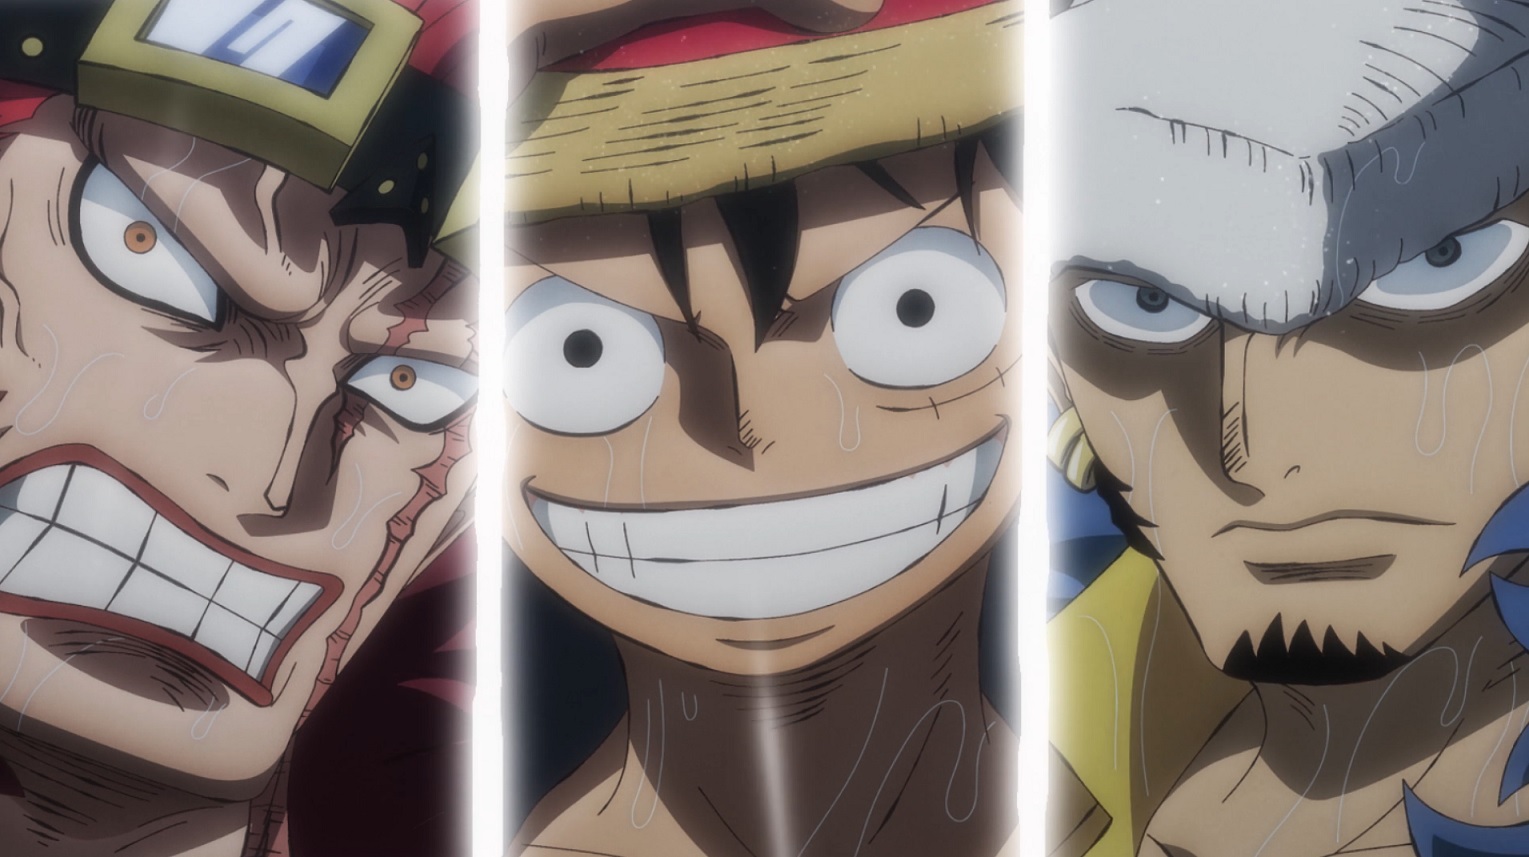 Artista imaginou como seriam os piratas da Pior Geração de One Piece como capitães do Gotei 13